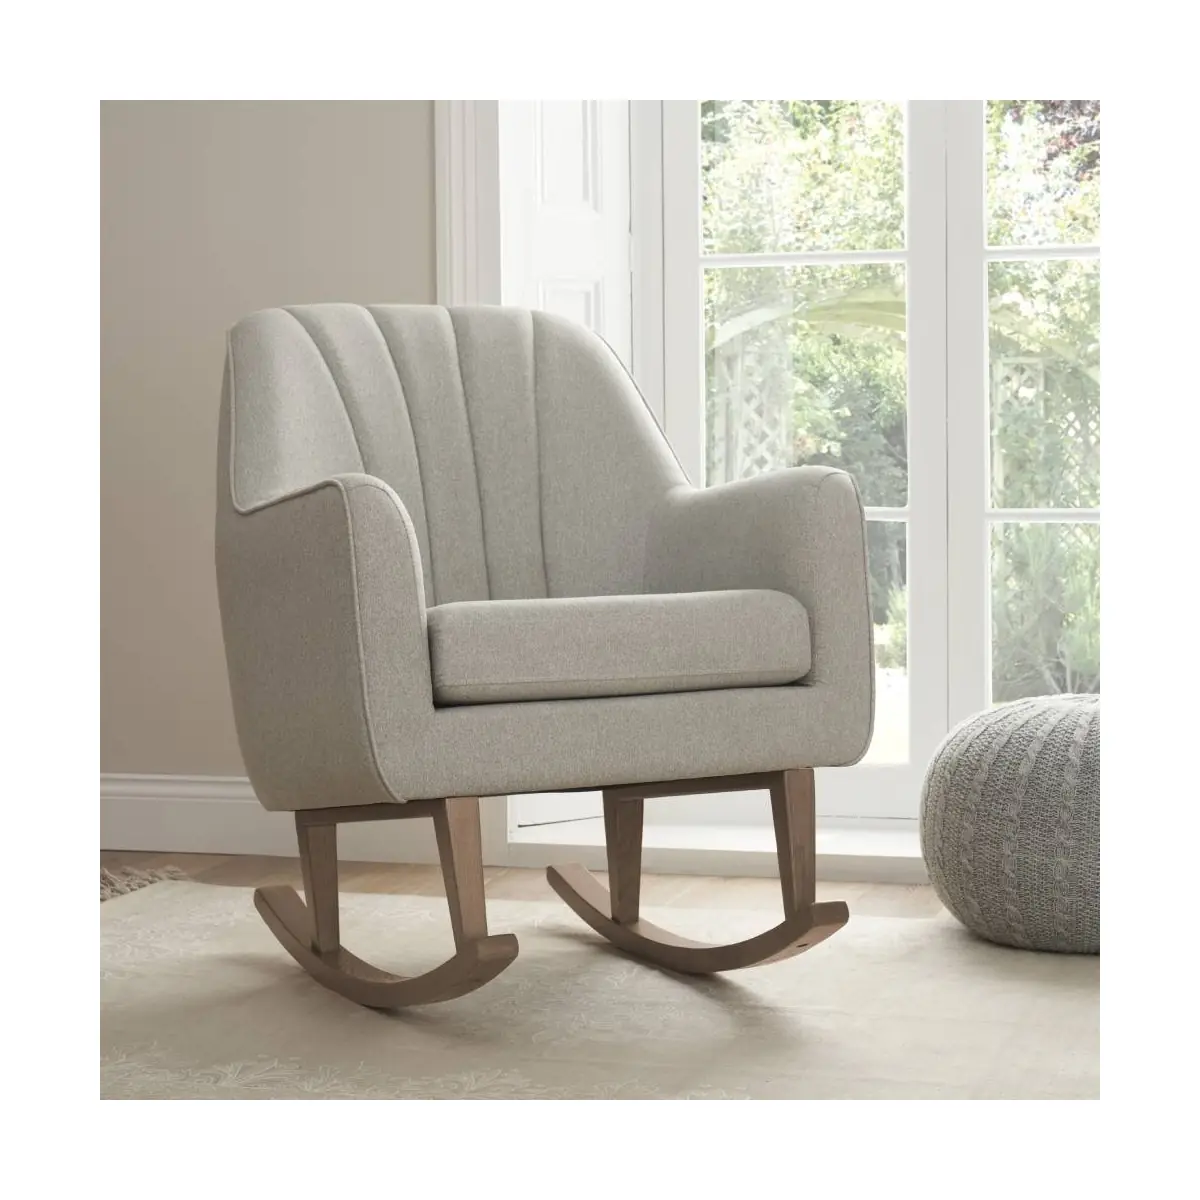 Image of Tutti Bambini Noah Rocking Chair-Pebble/Grey + Free Nursing Pillow Worth £59.99!